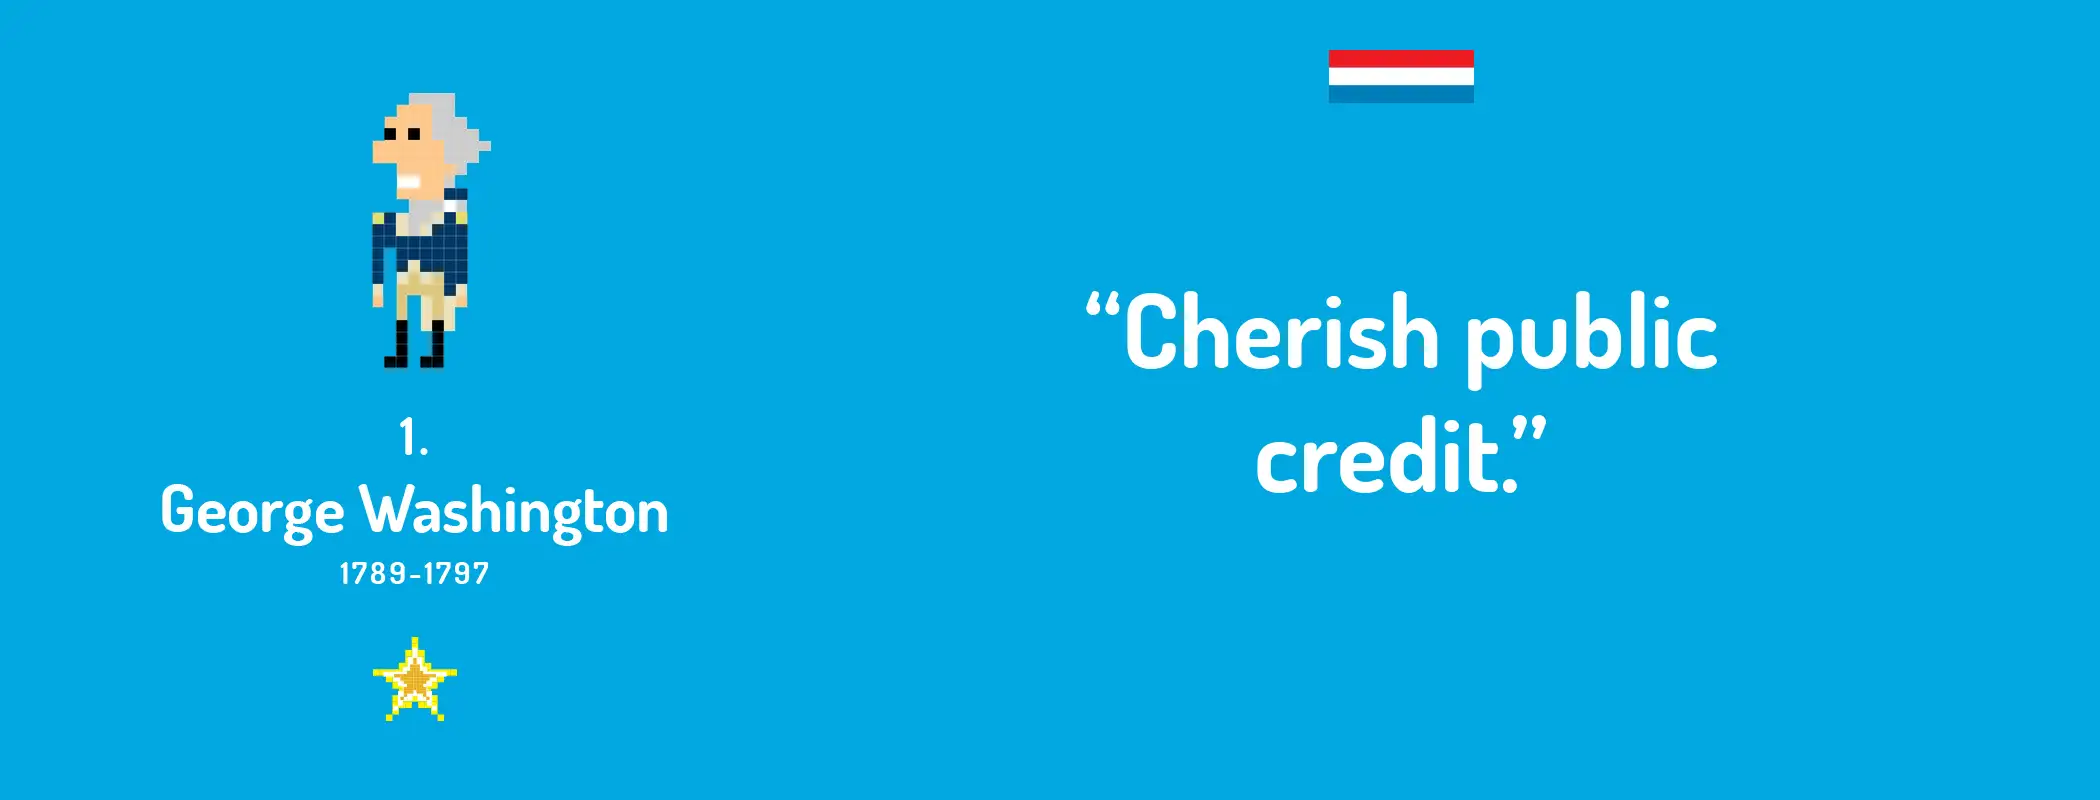 “Cherish public credit.”